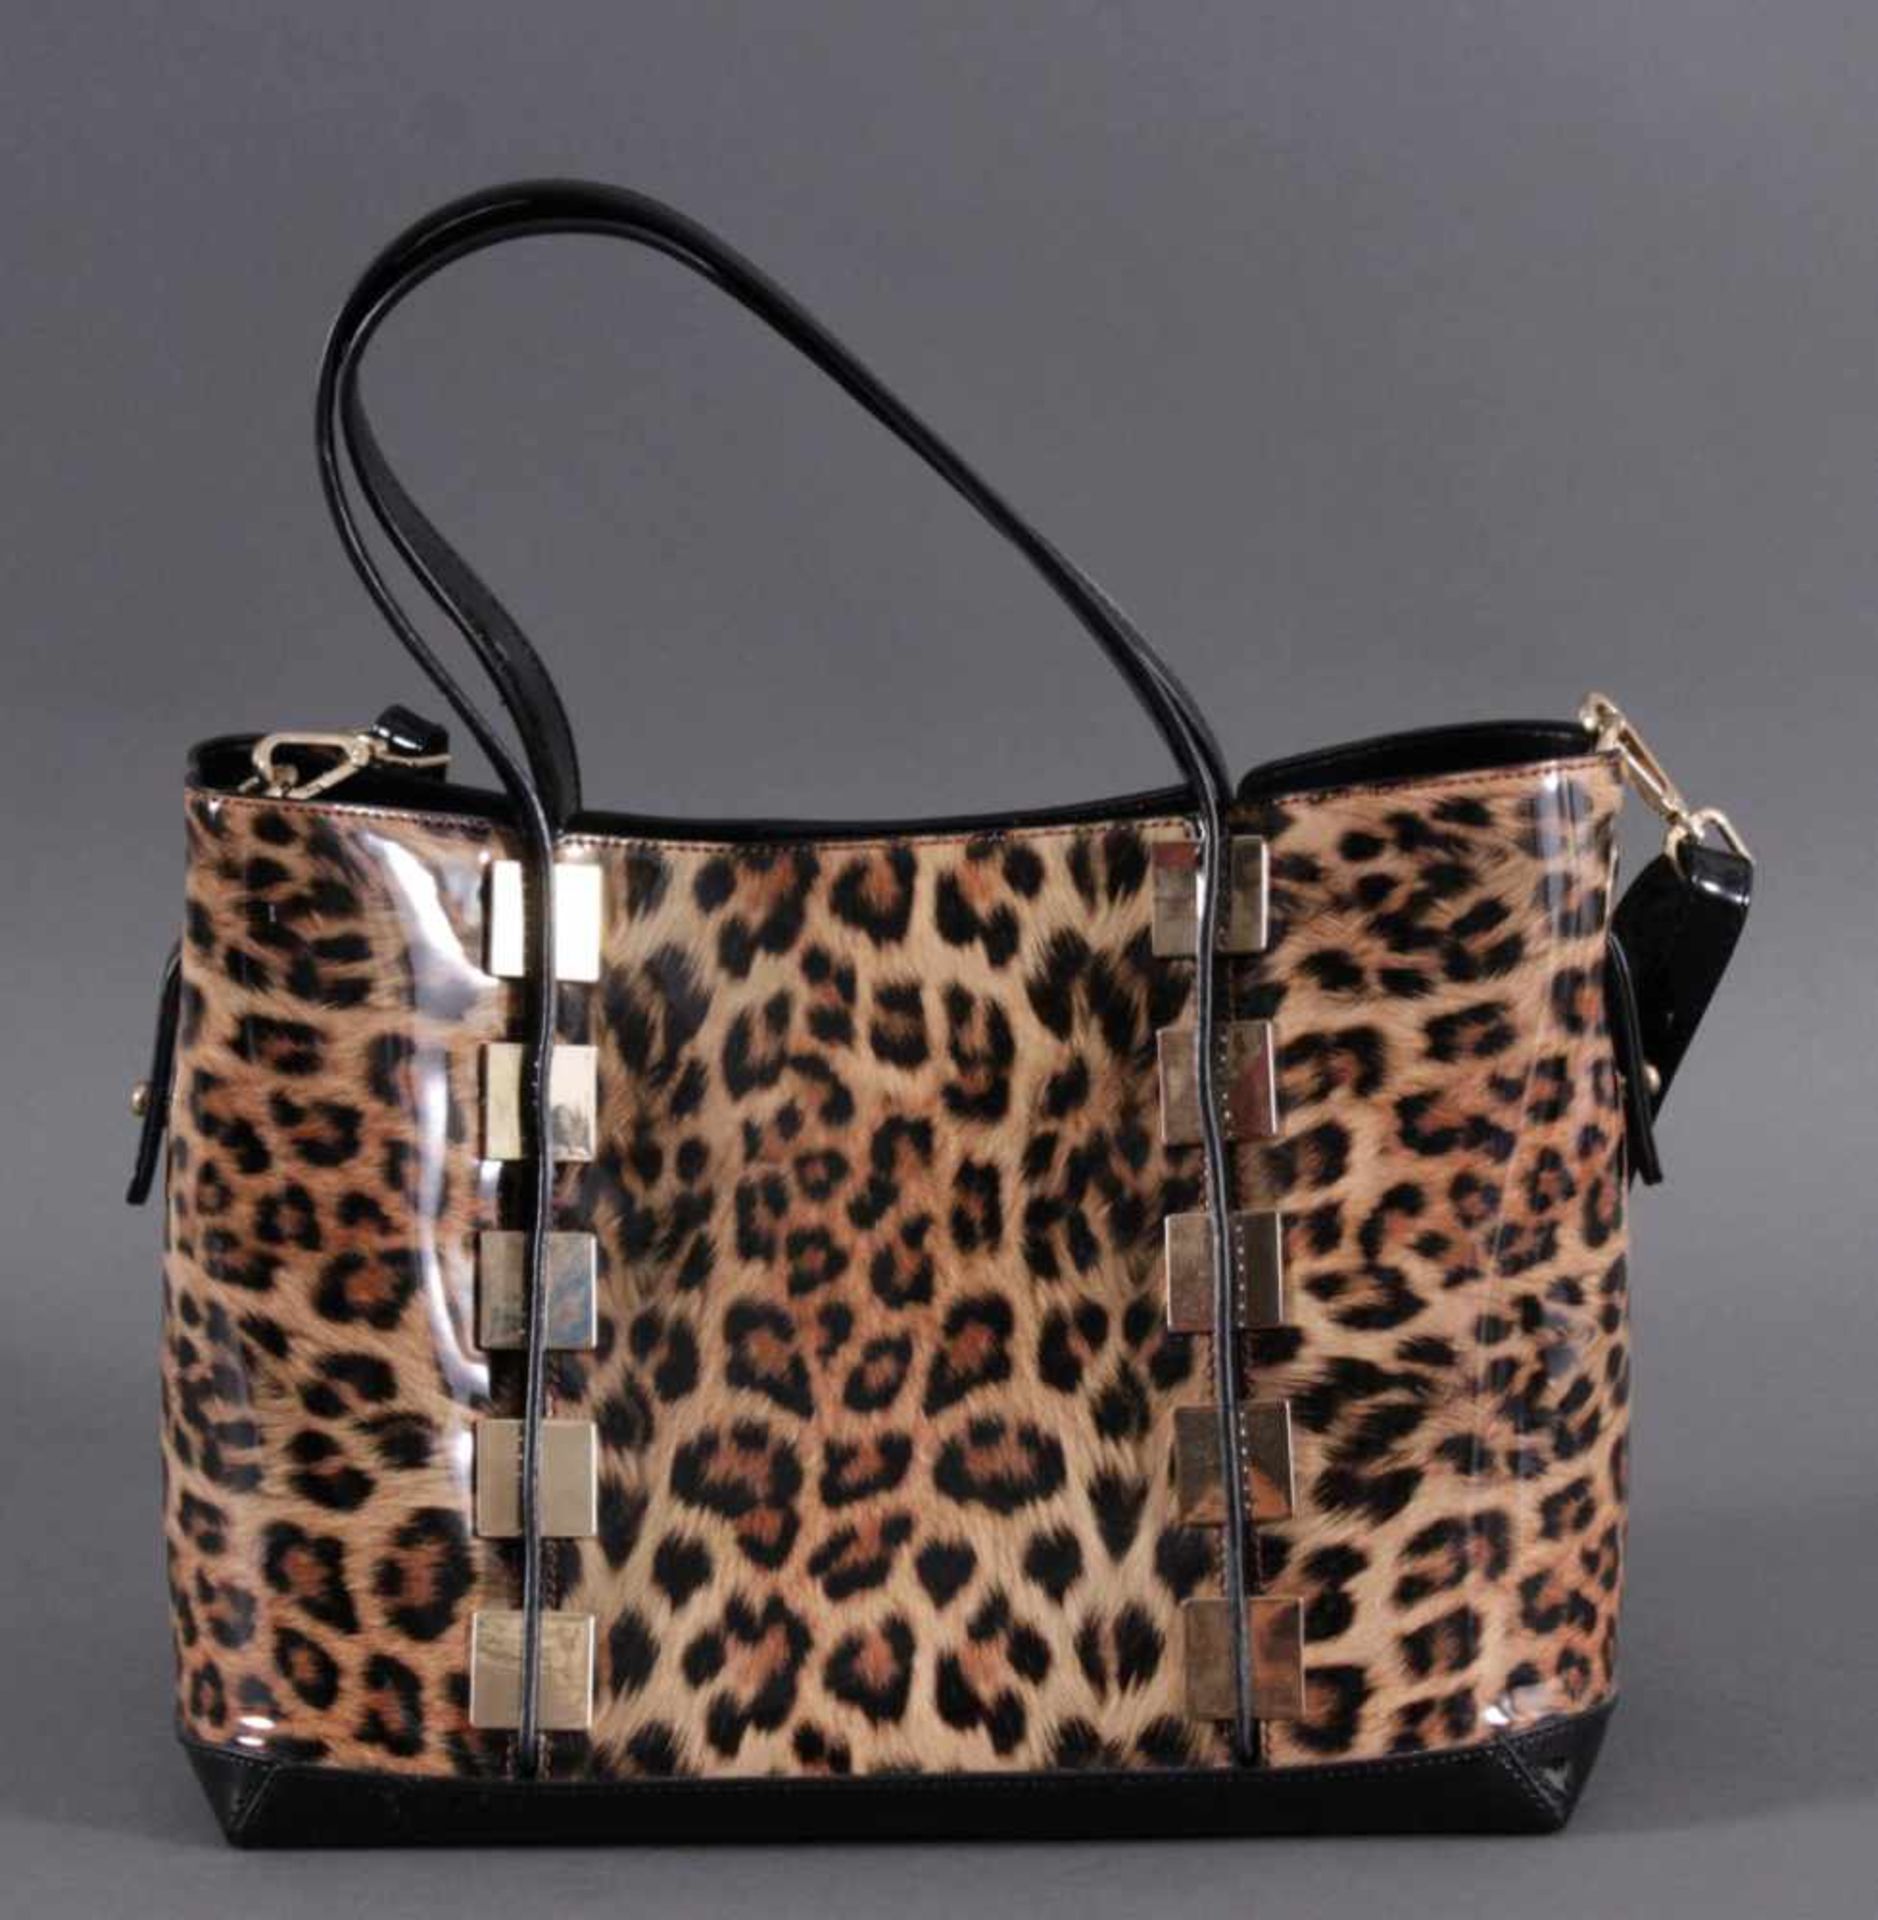 Le Miel Handtasche "Leo-Look"Neuwertig,mit abnehmbarer Innentasche und Reißverschlußfach,zwei Henkel - Bild 2 aus 4